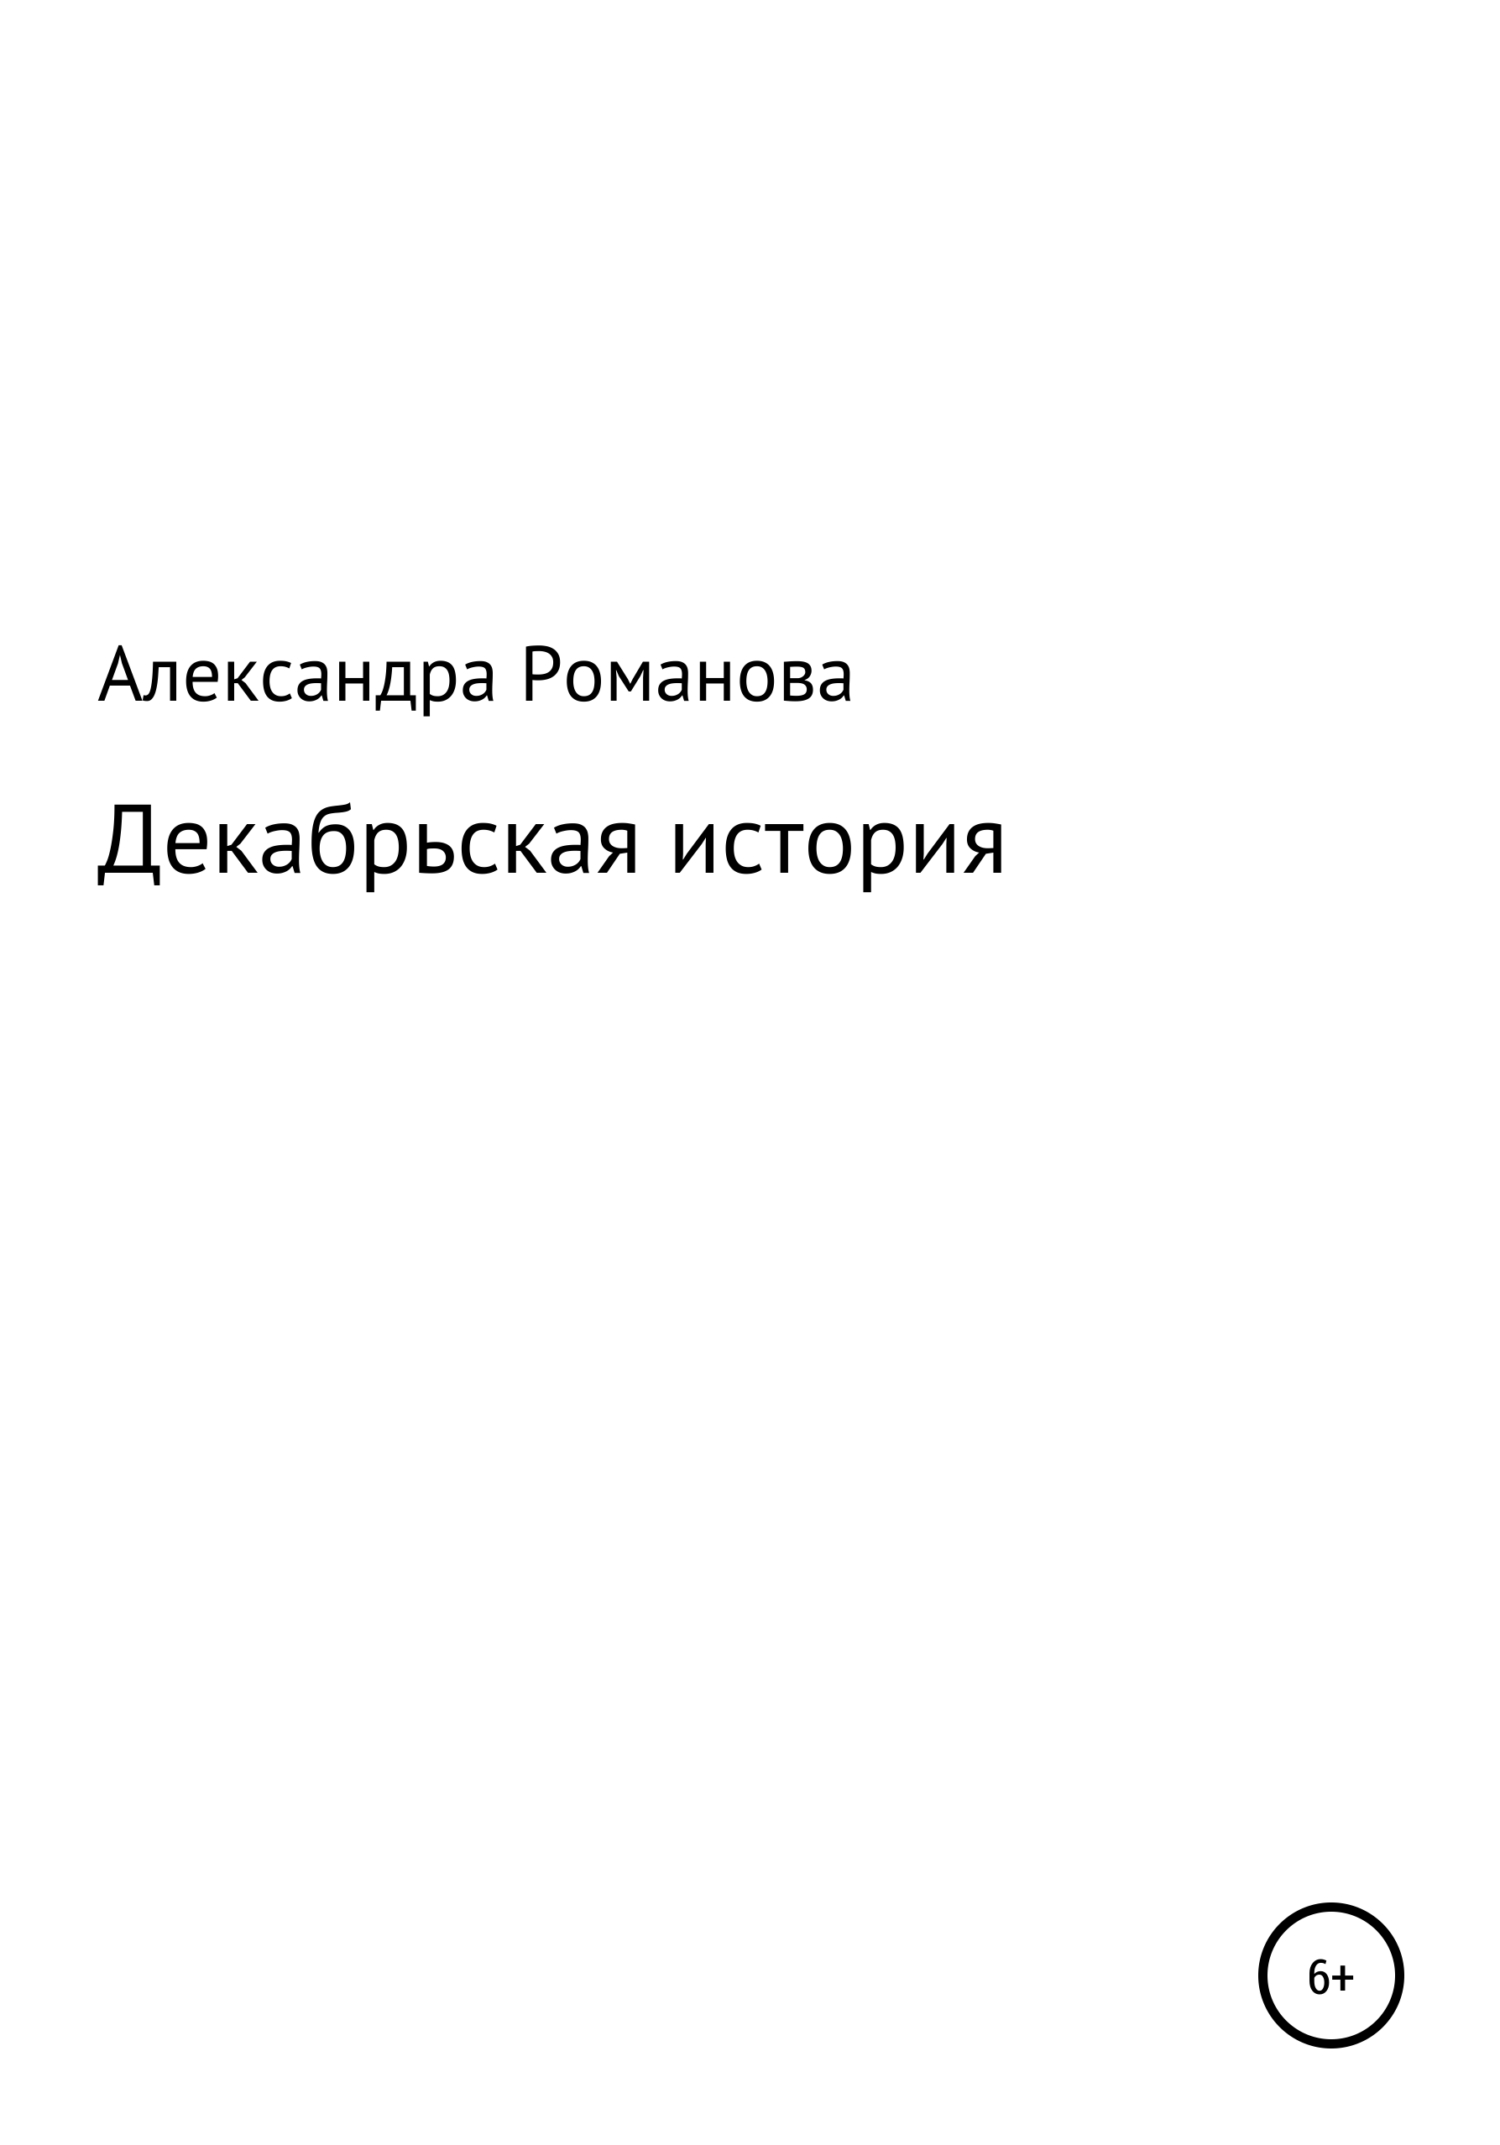 Декабрьская история - Александра Авророва